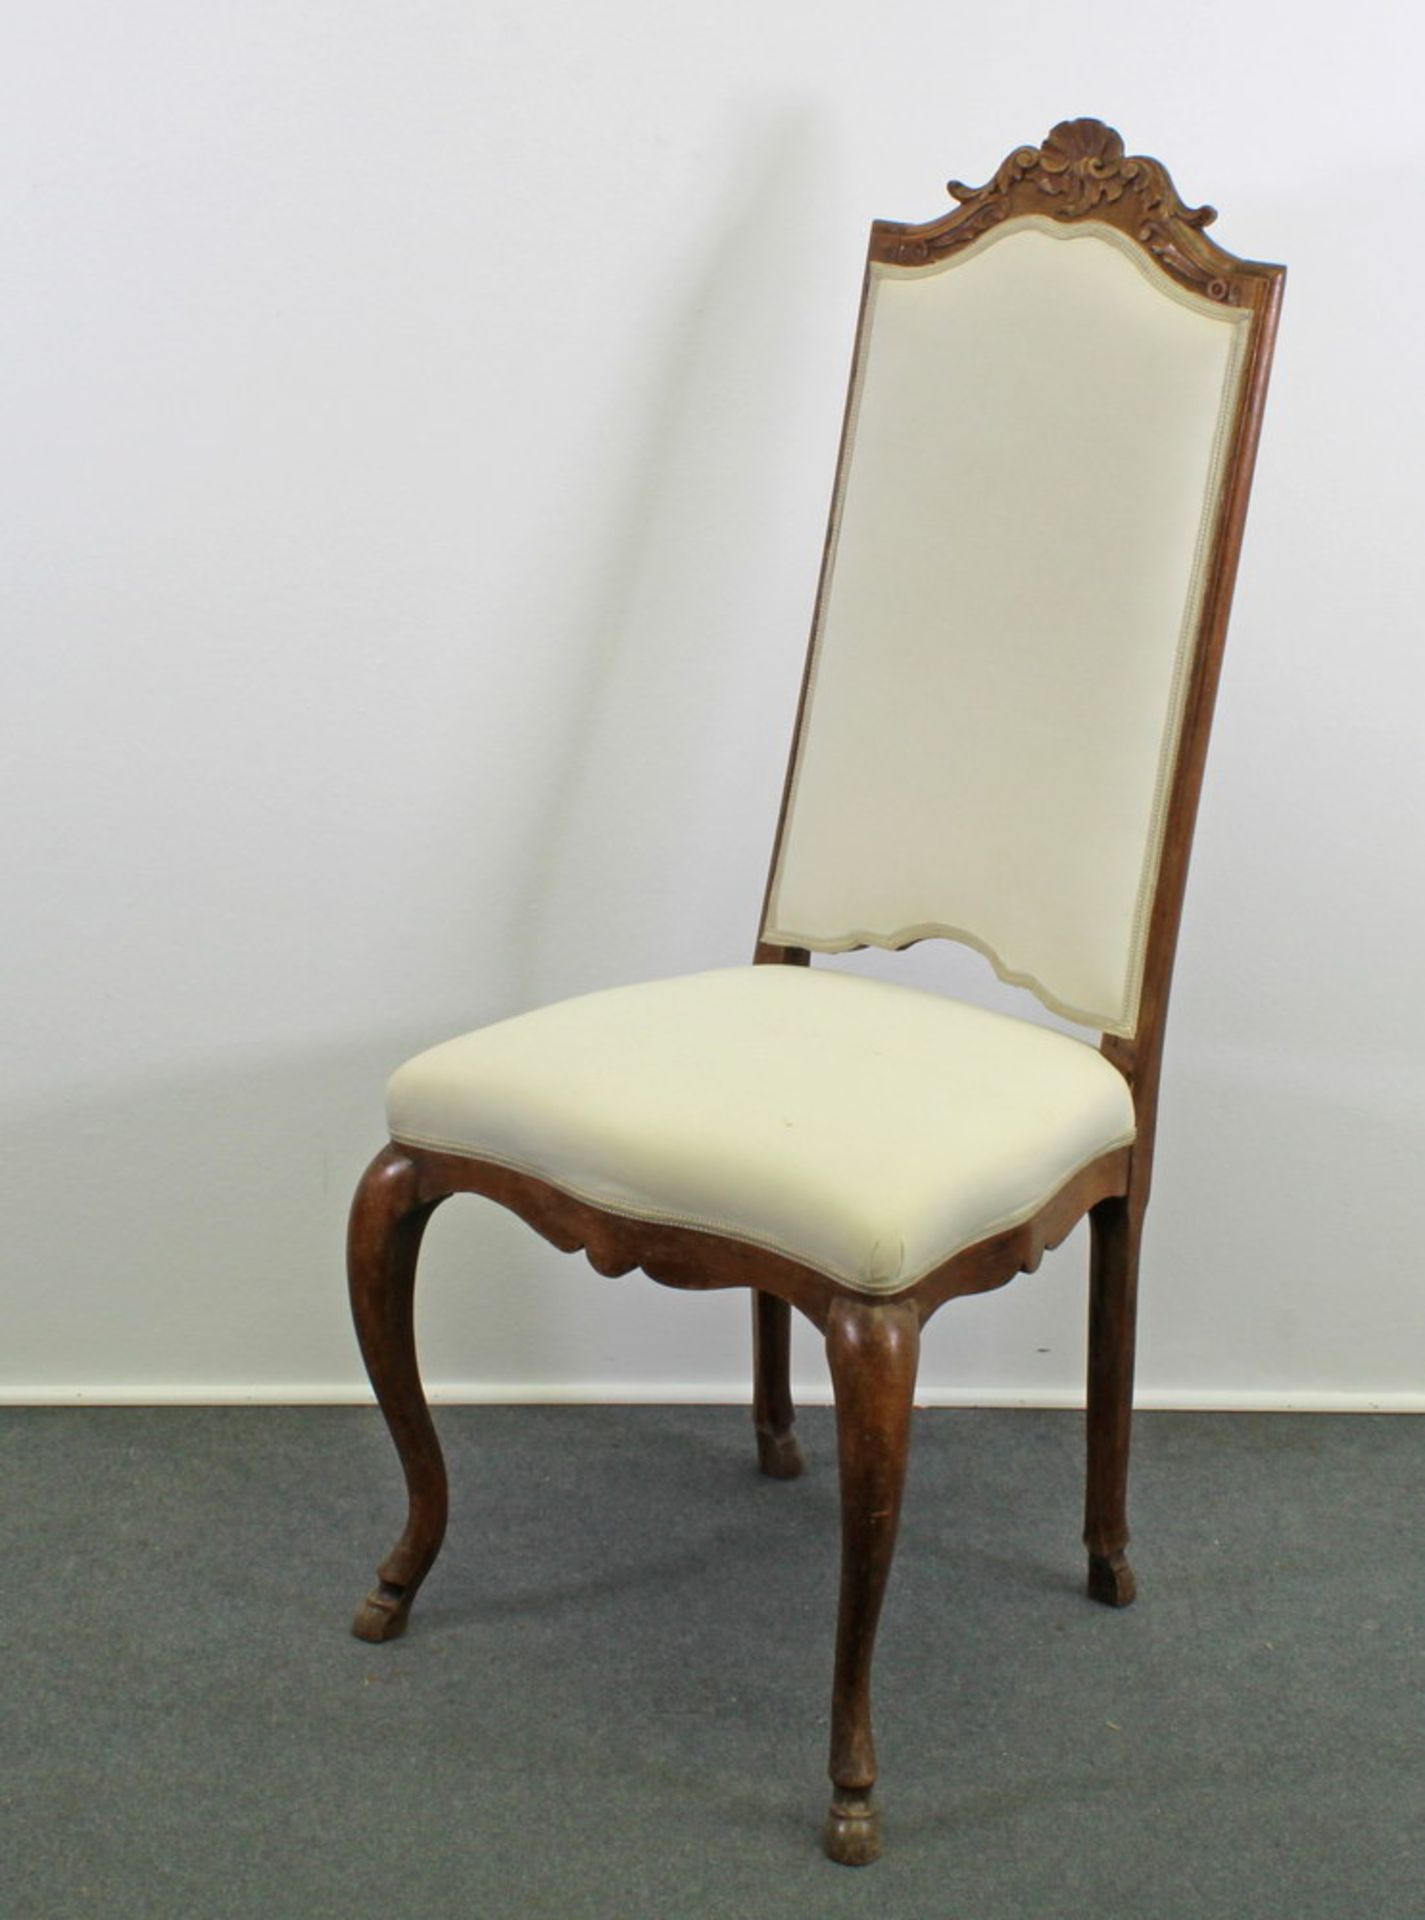 2 Stühle, 18. Jh., Nussbaum, erneuertes Sitz- und Rückenpolster, Flachschnitzwerk, ein Bein - Bild 2 aus 3